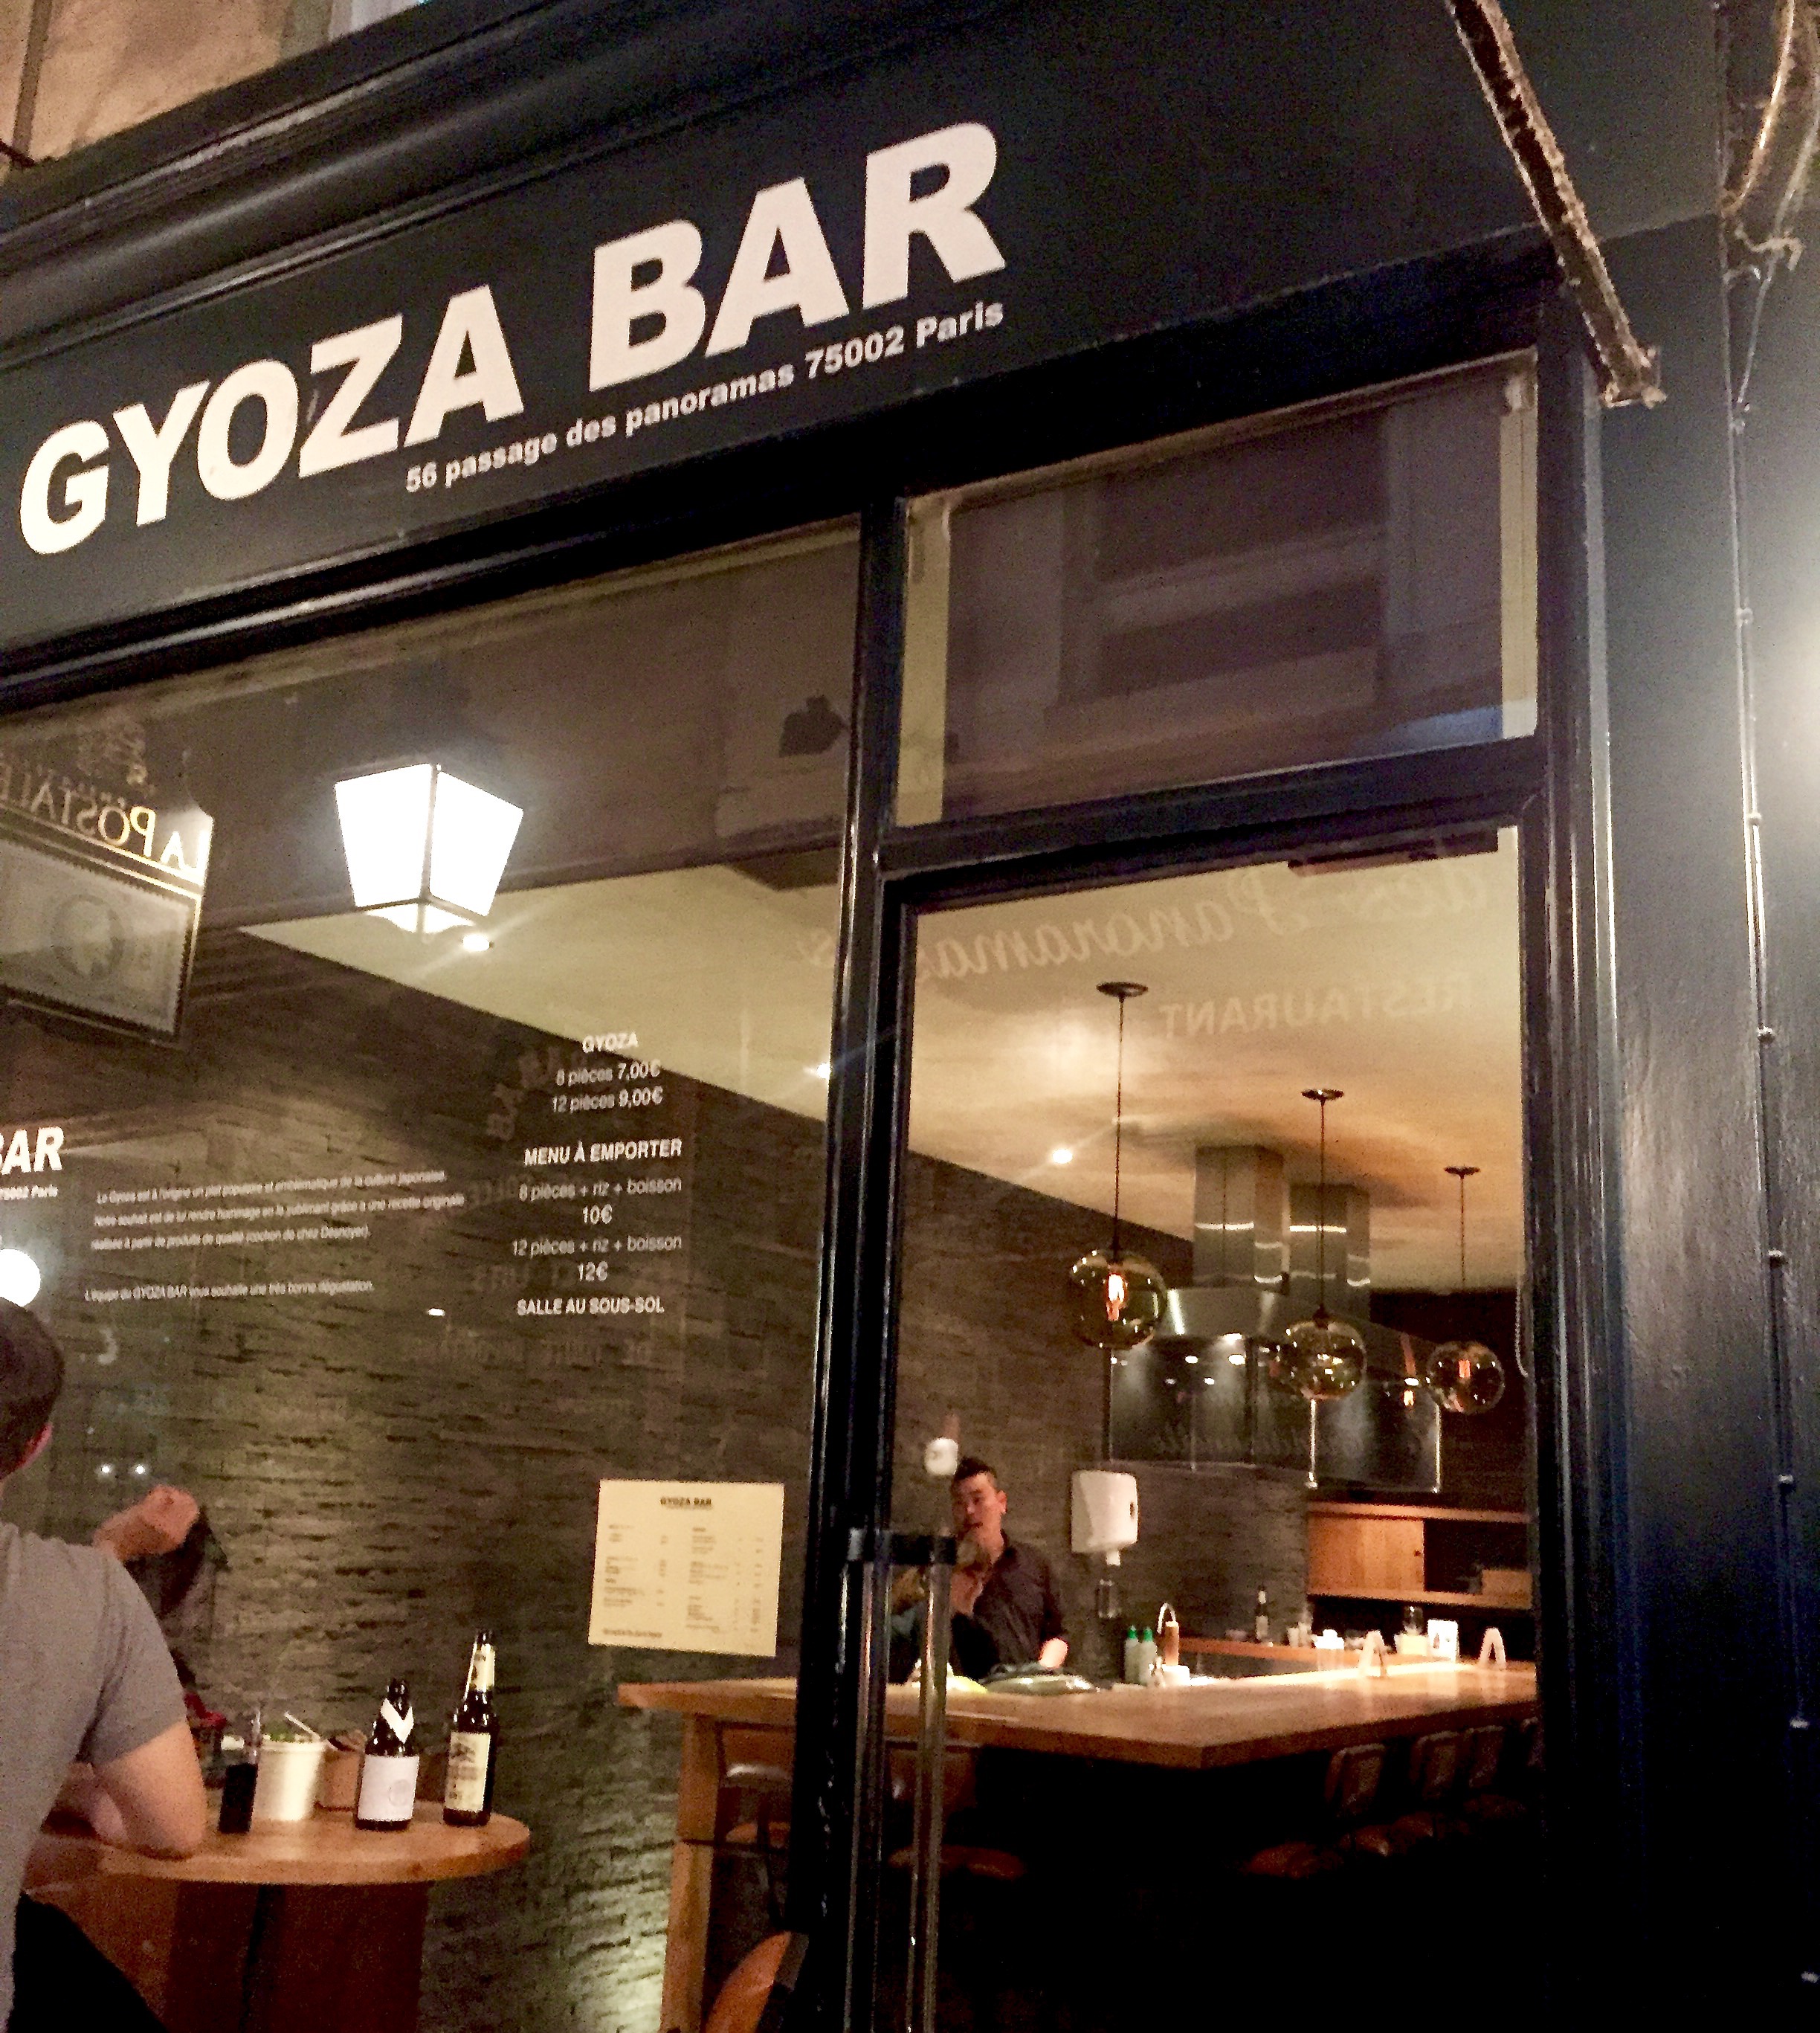 Gyoza Bar, Paris France - Food Fashionista